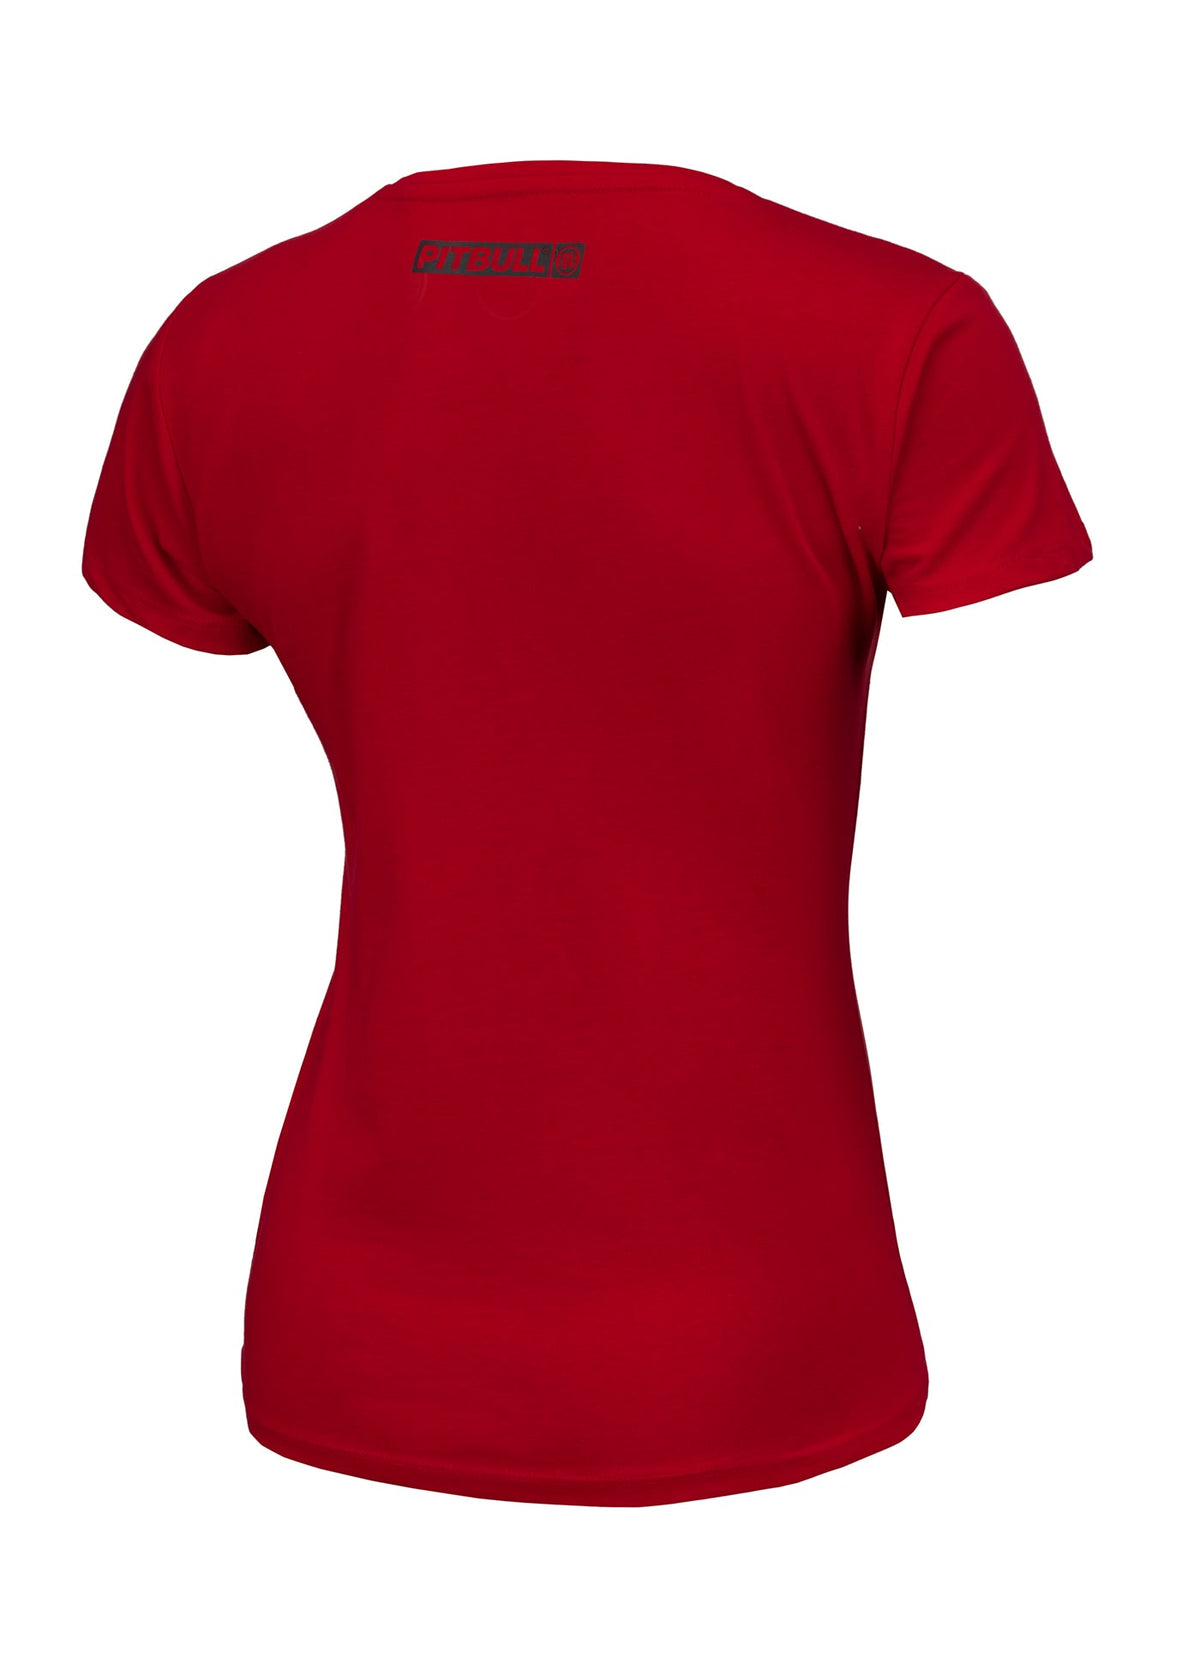 HILLTOP REGULAR Red T-shirt